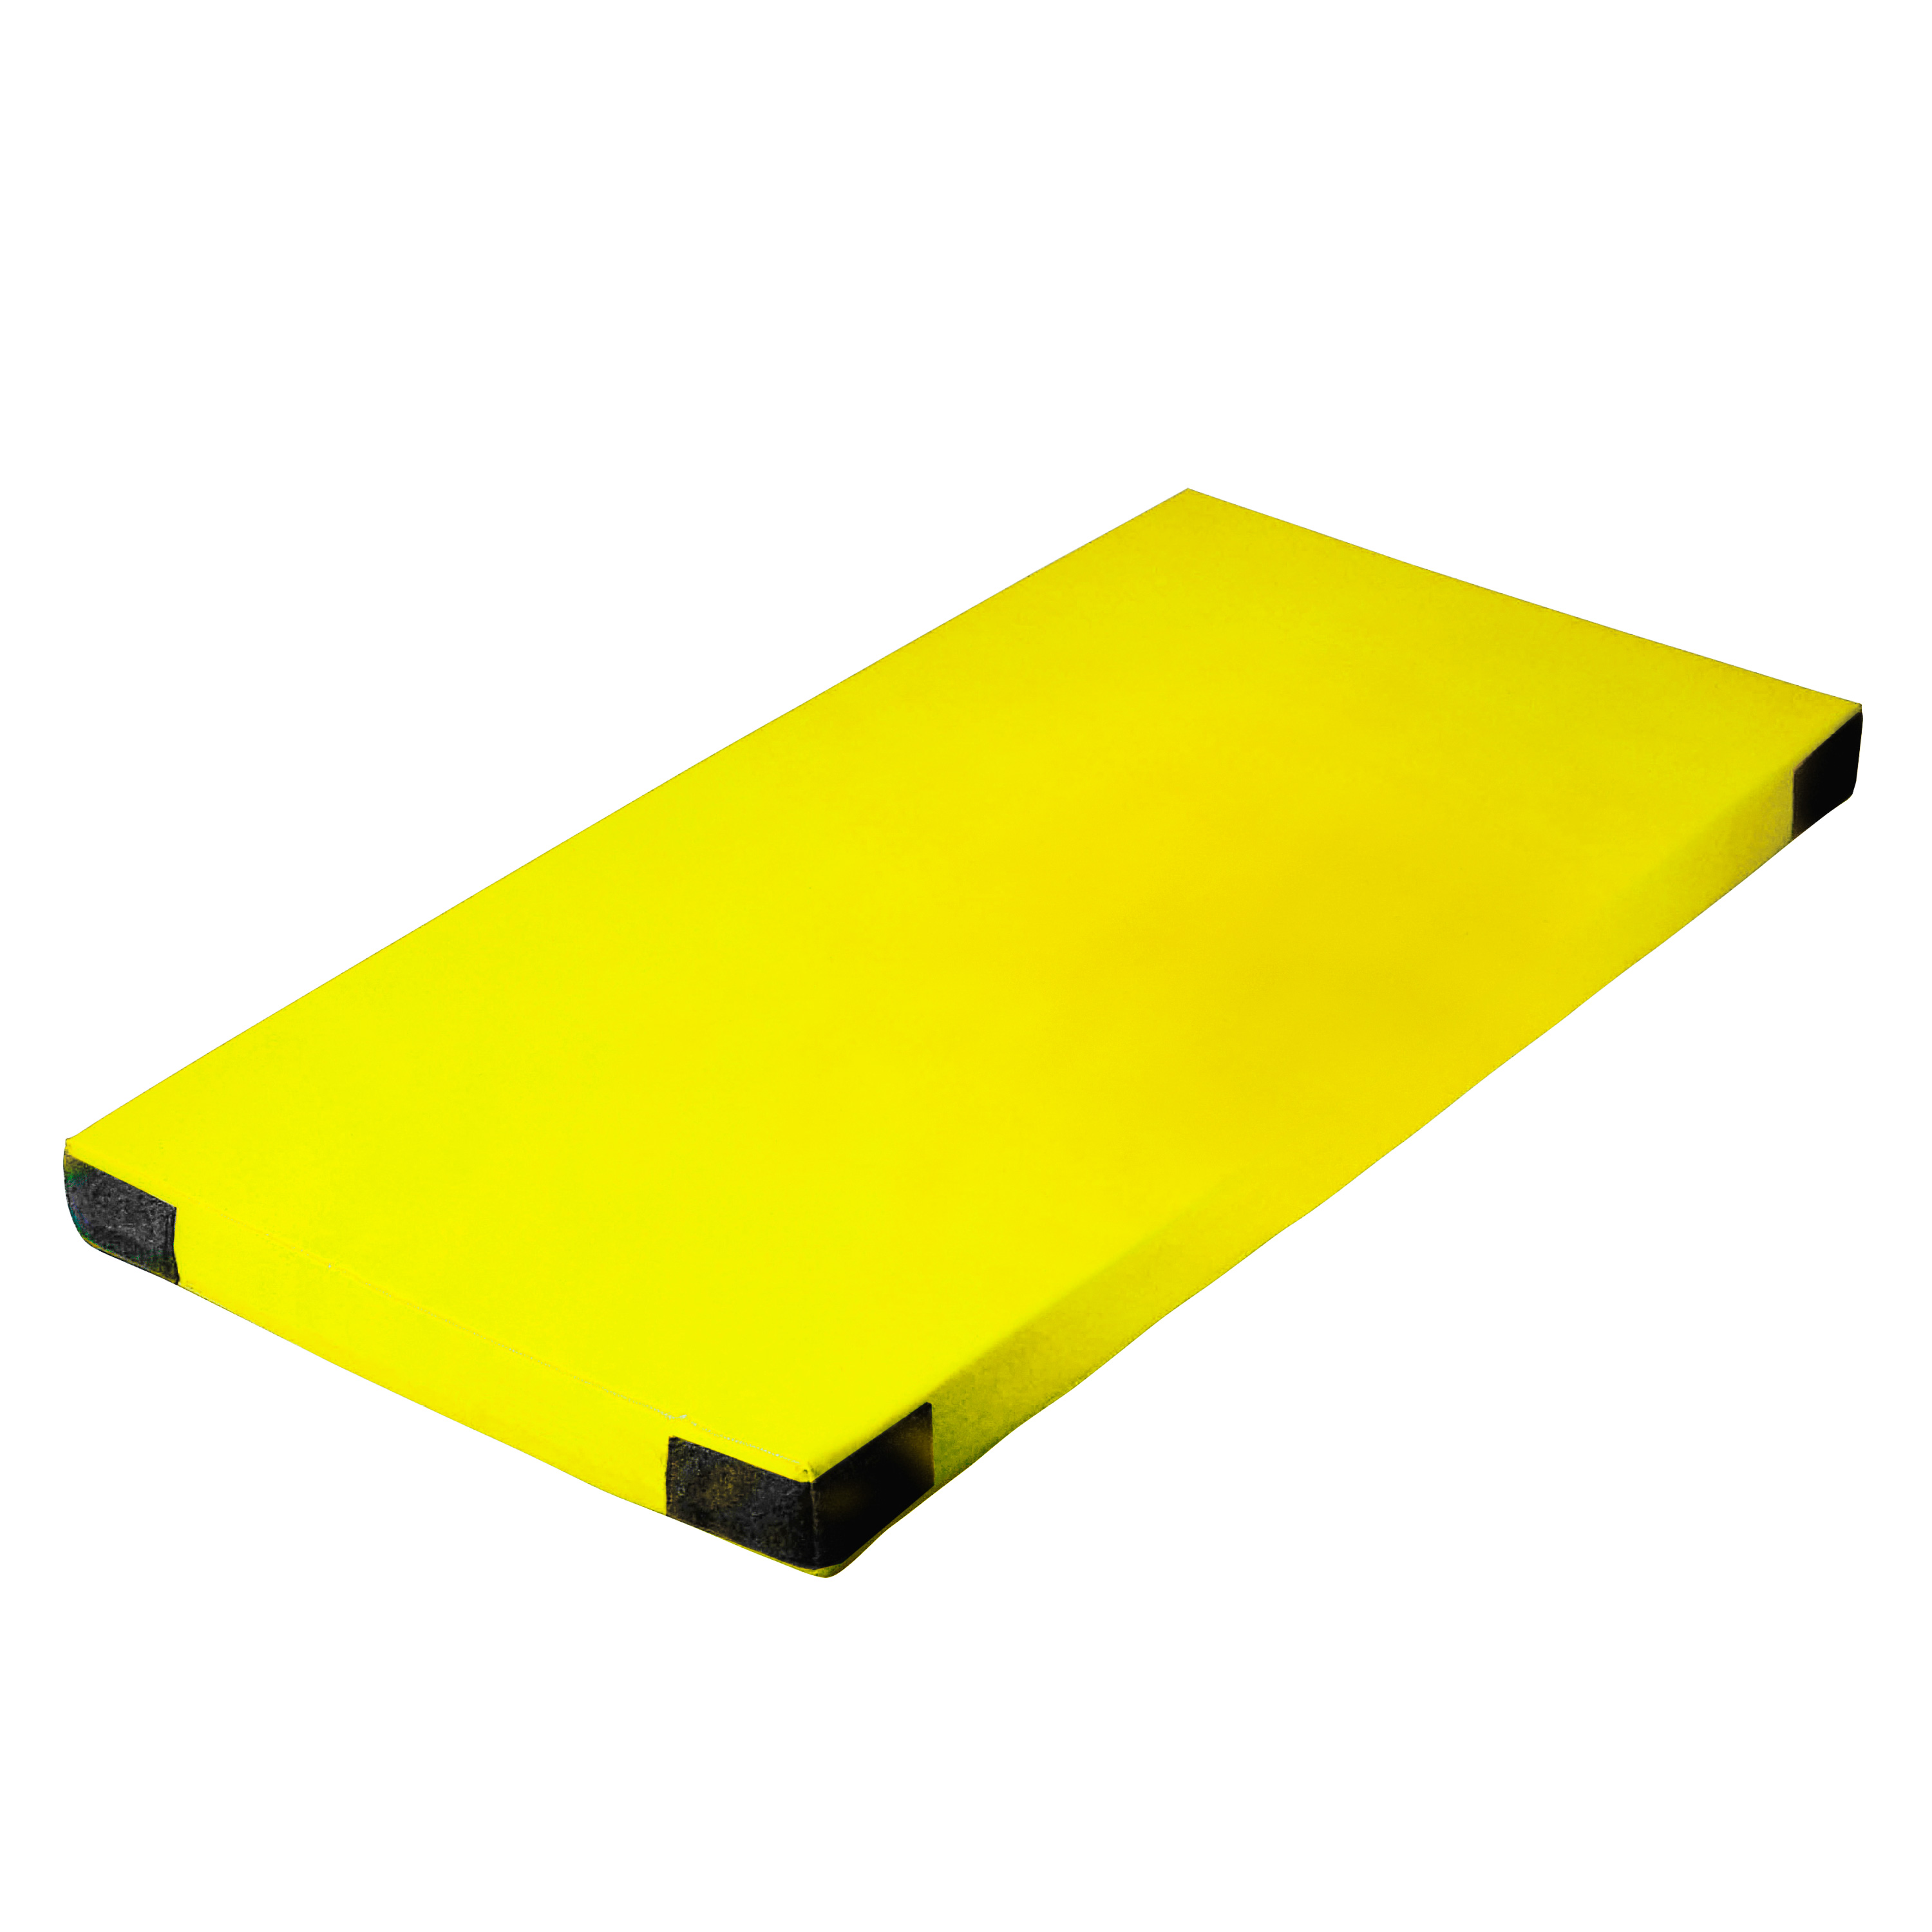 SuperLeichtturnmatte mit Klettecken,150x100x6 cm, 6 kg, gelb